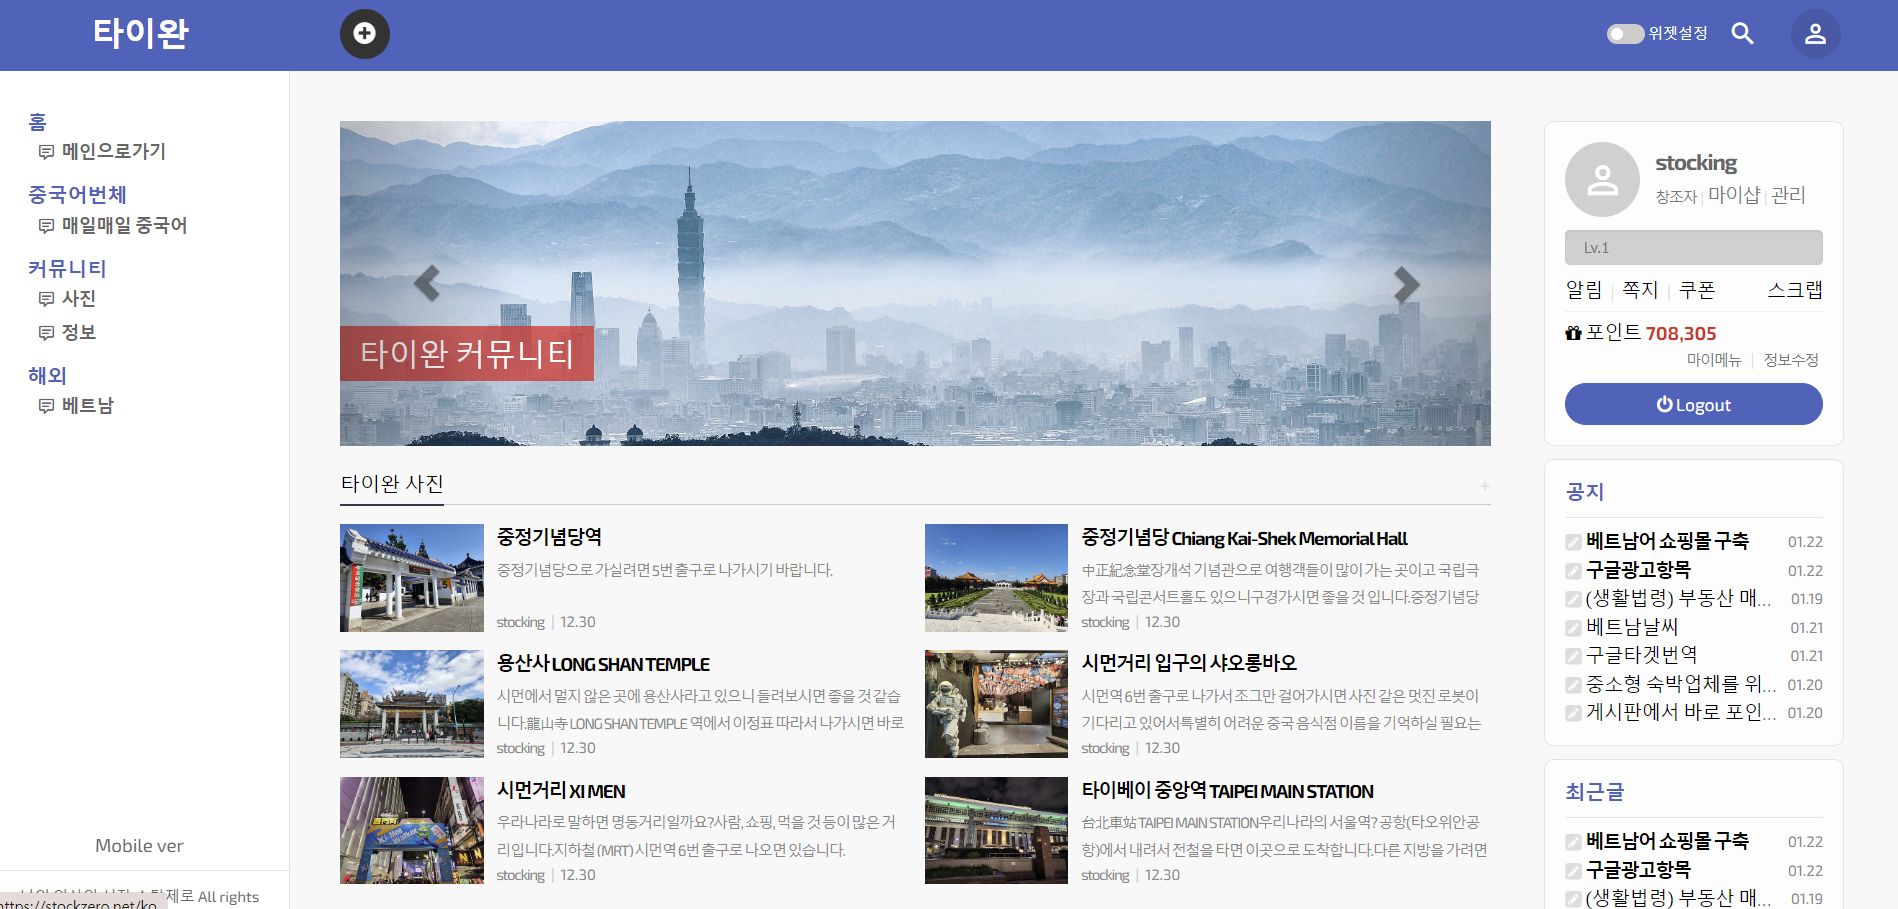 한국어 제로셋 홈페이지 블루톱(1년)